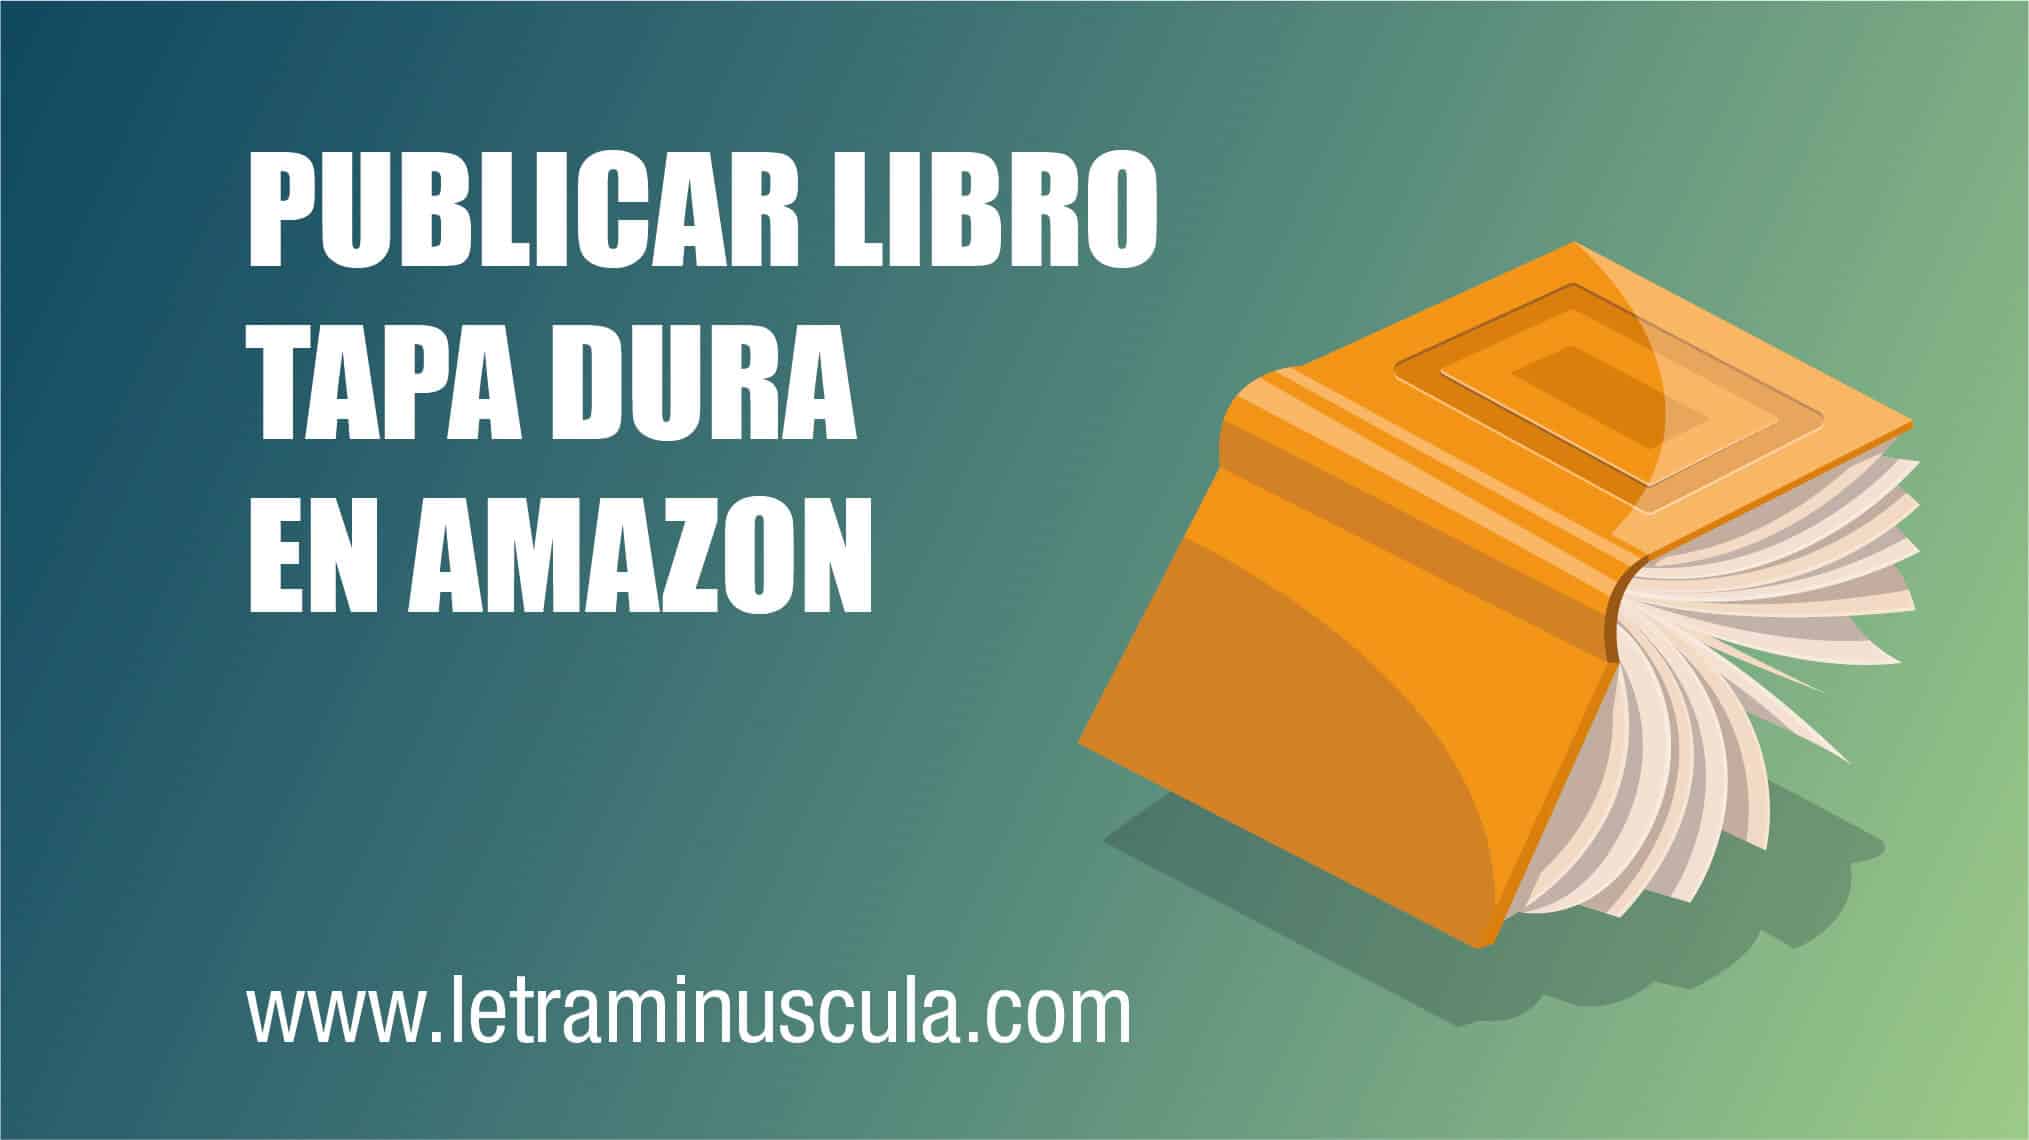 PUBLICAR UN LIBRO TAPA DURA EN AMAZON